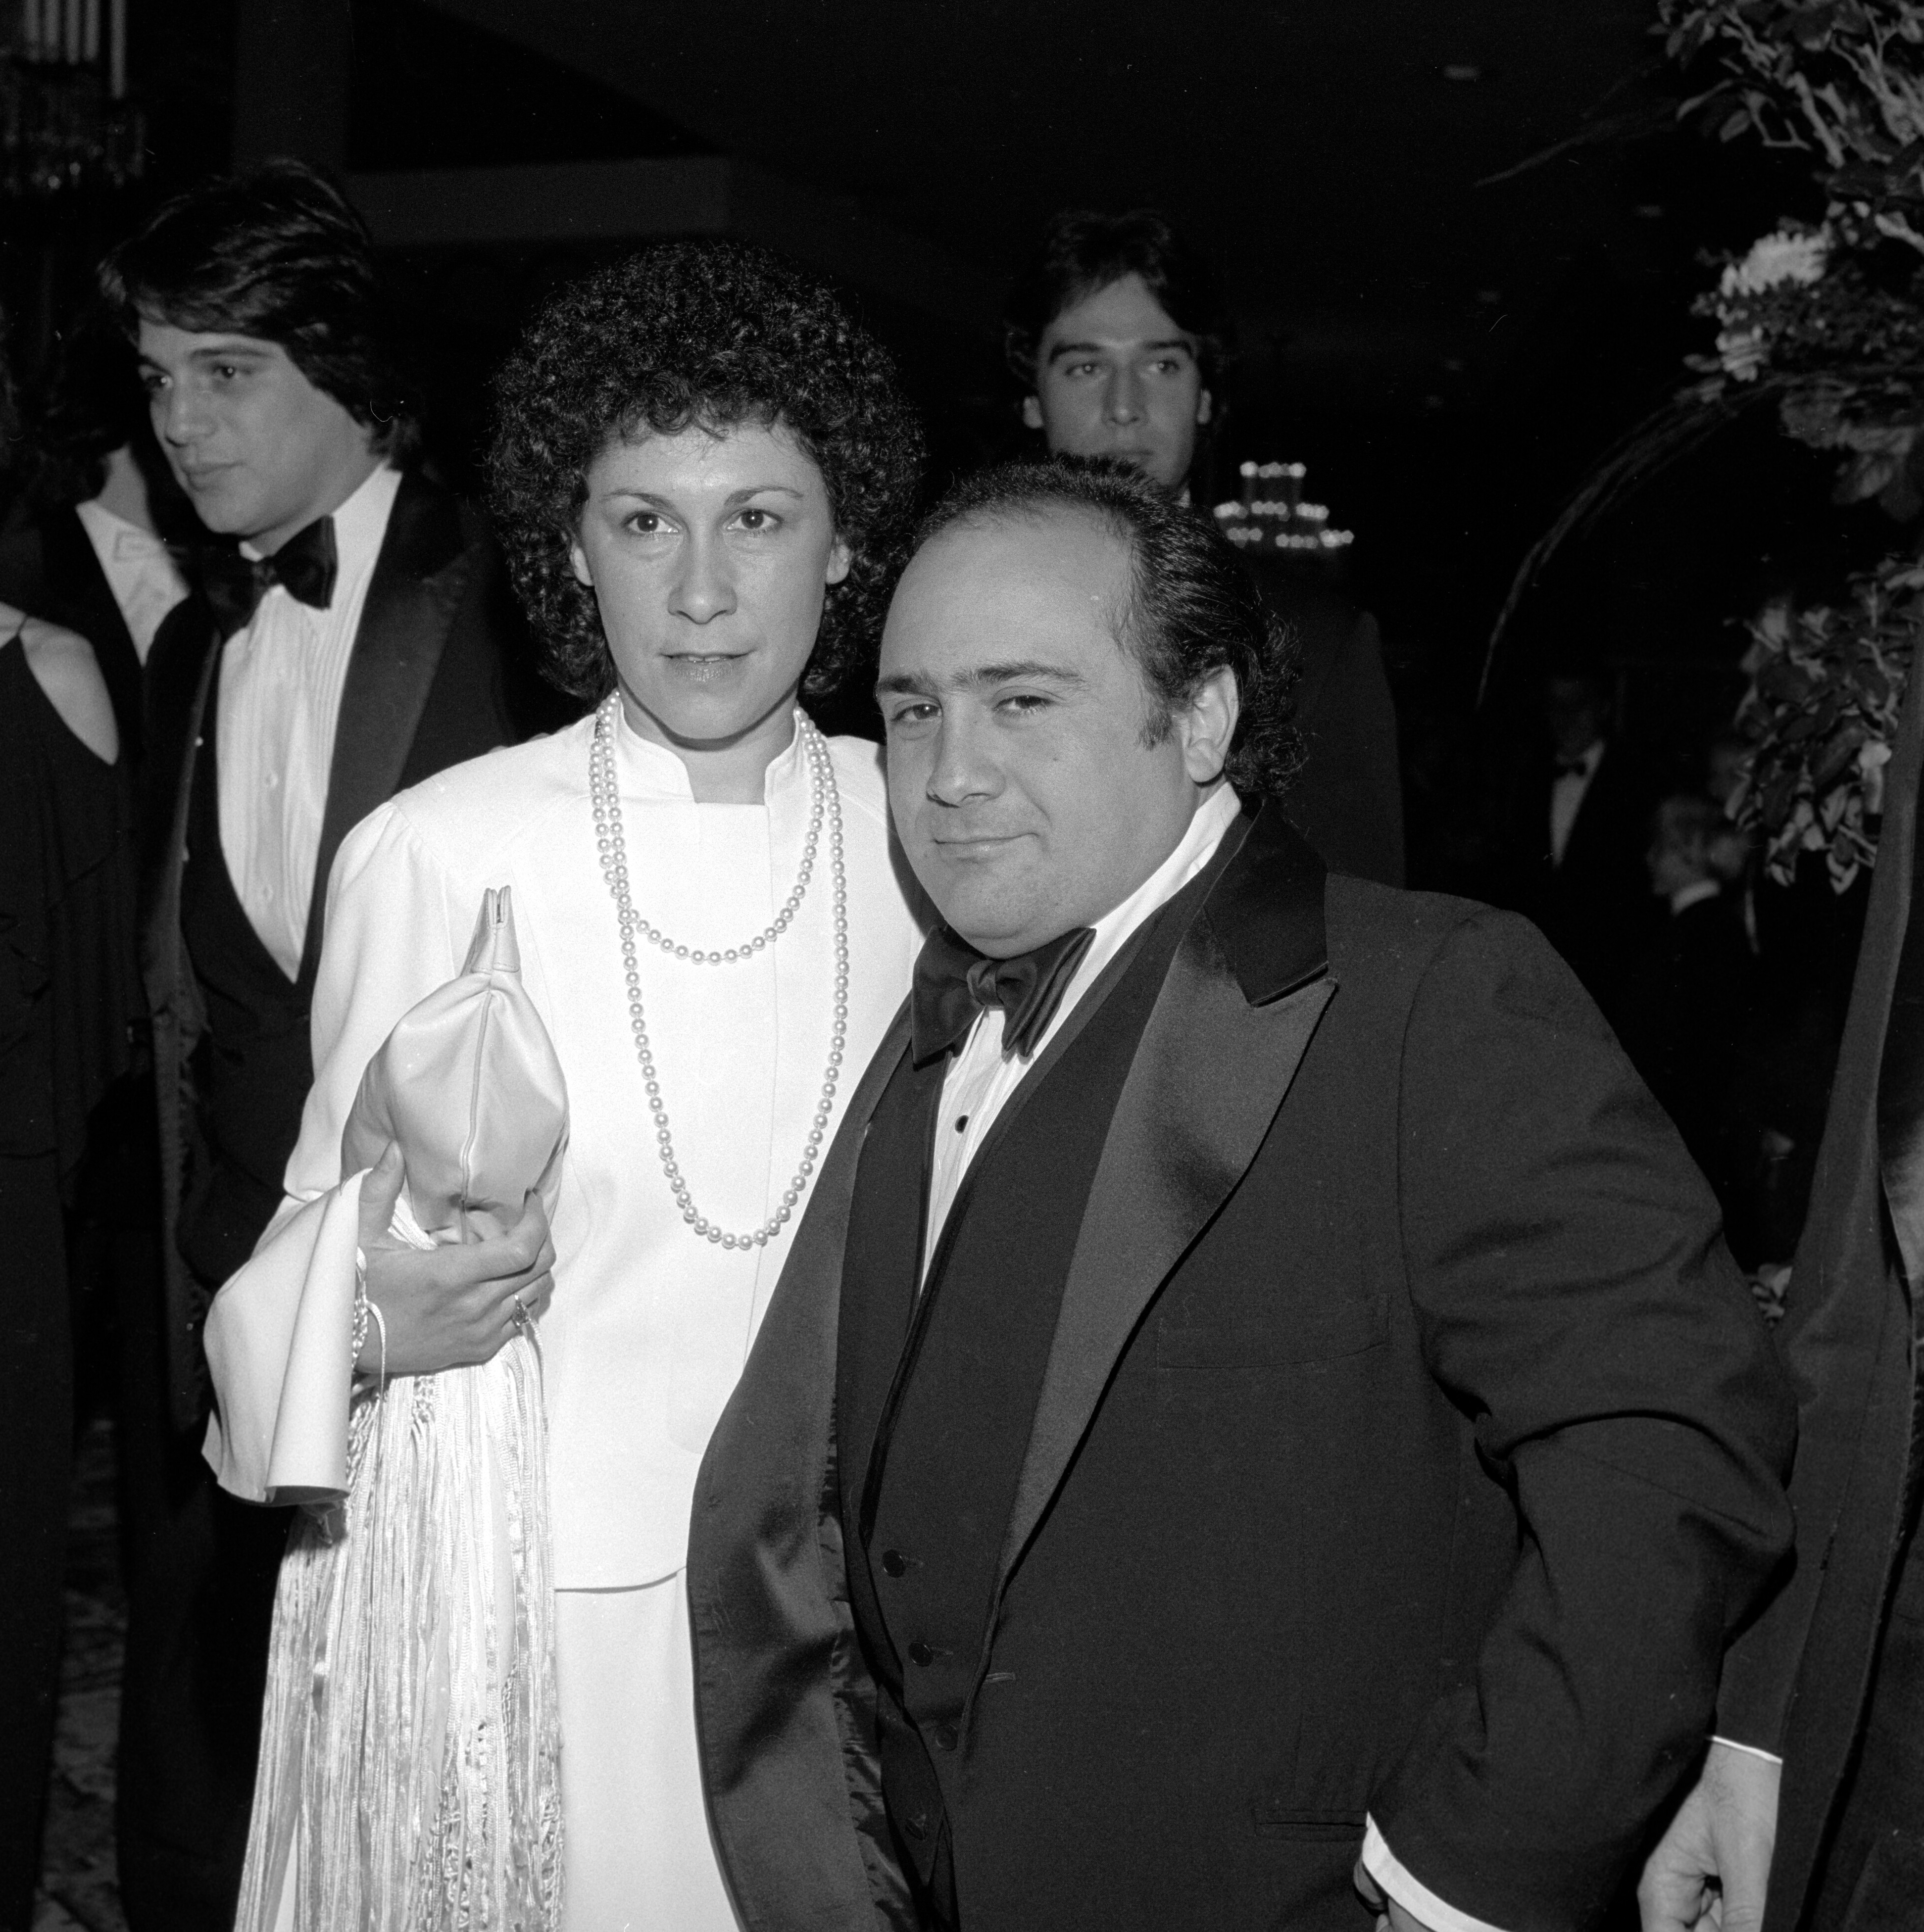 1980 Danny DeVito and Rhea Perlman, 37th Golden Globes